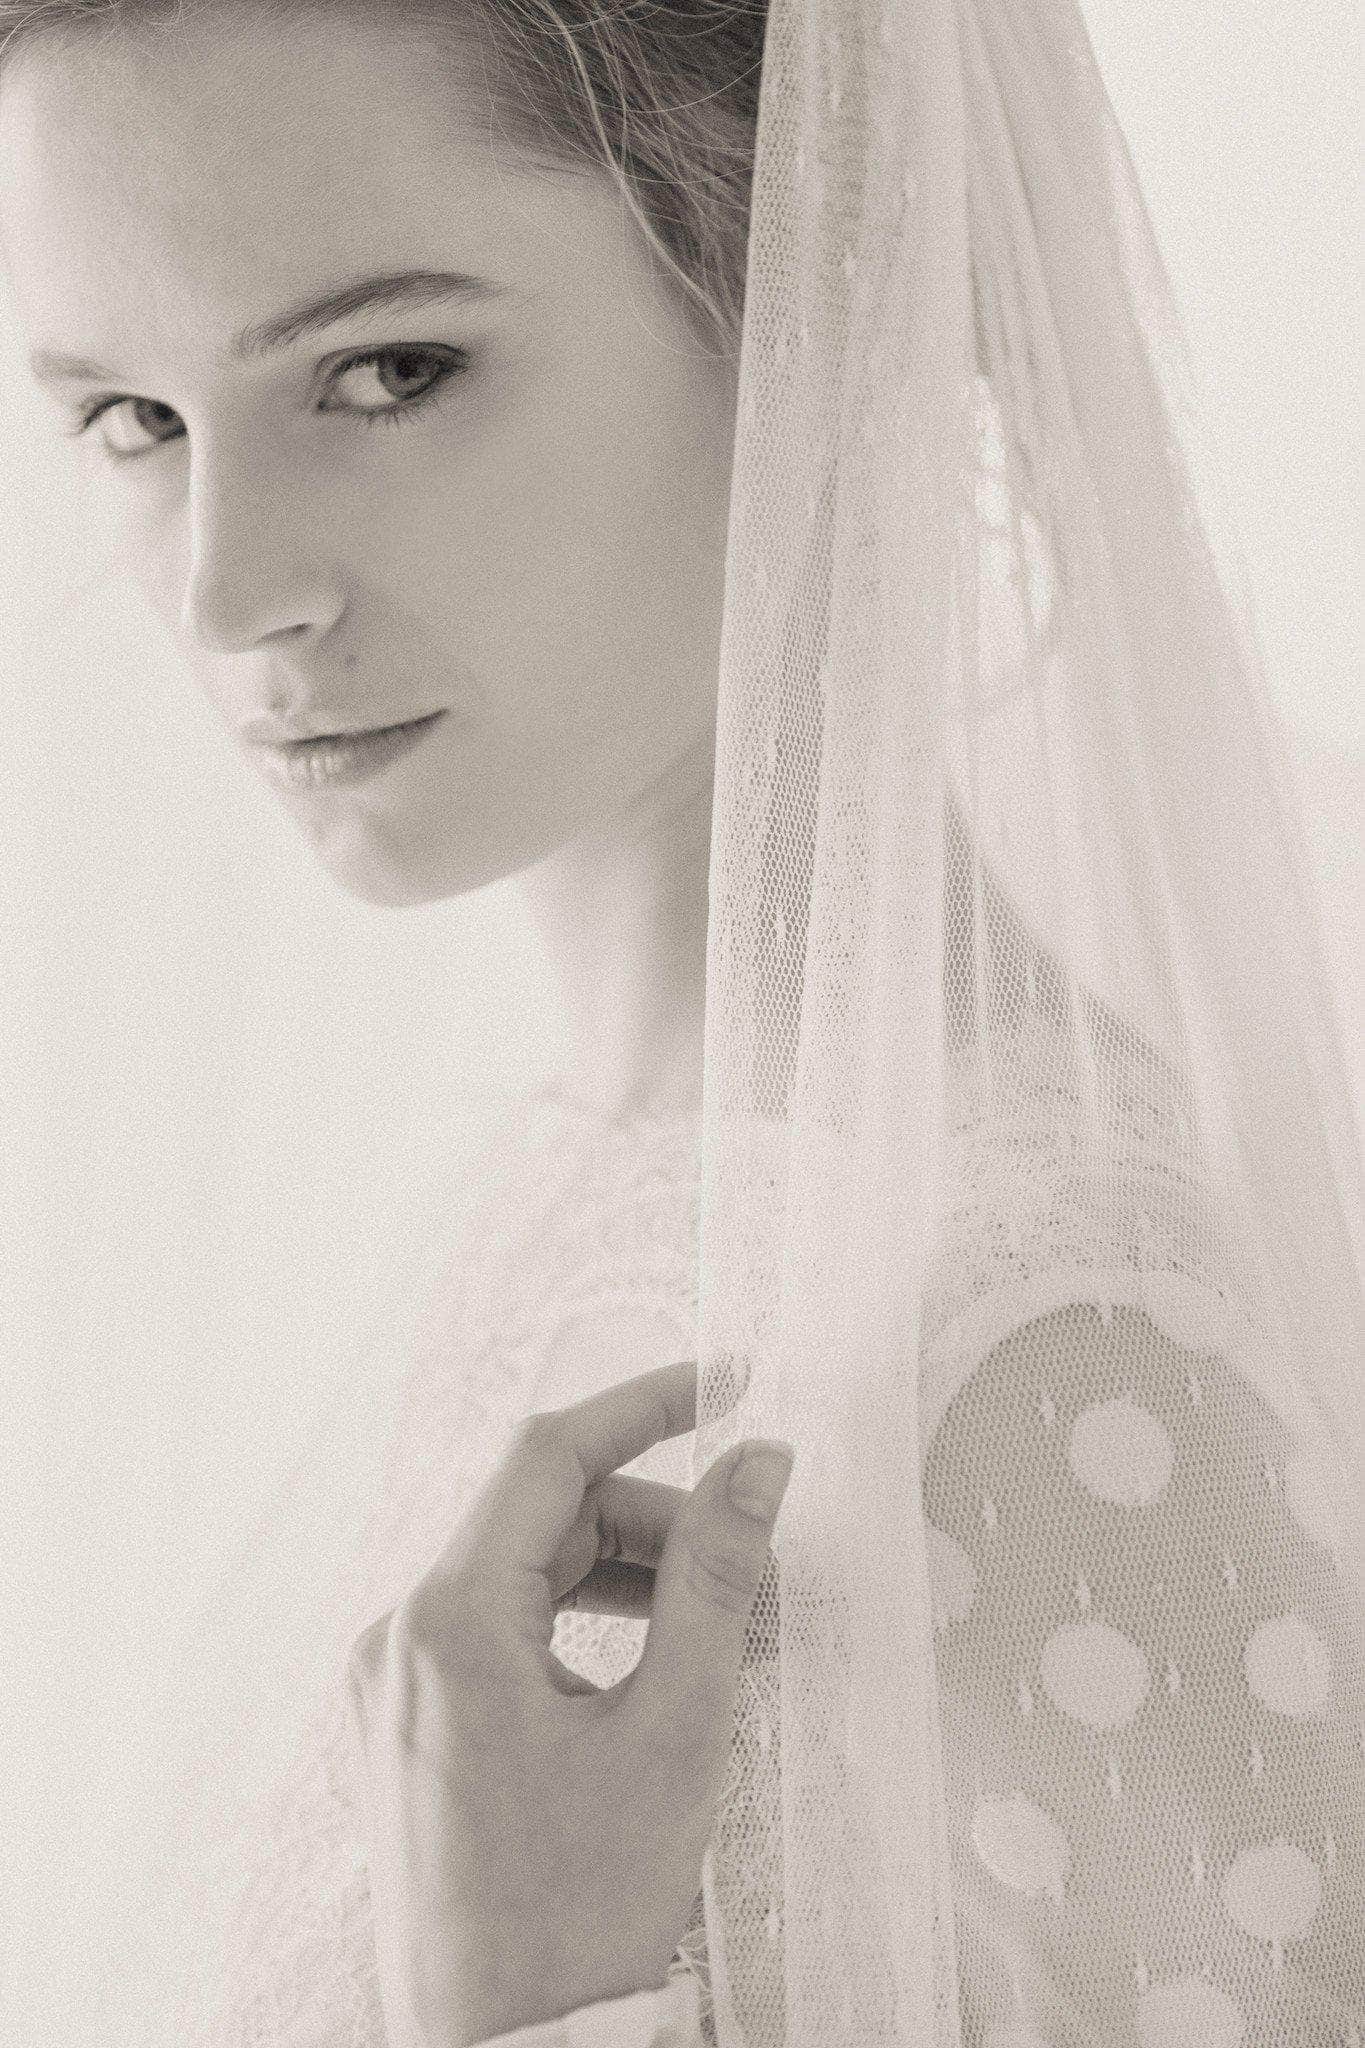 Wedding Veil Ivory / Fingertip length Polka dot wedding veil - 'Dot'